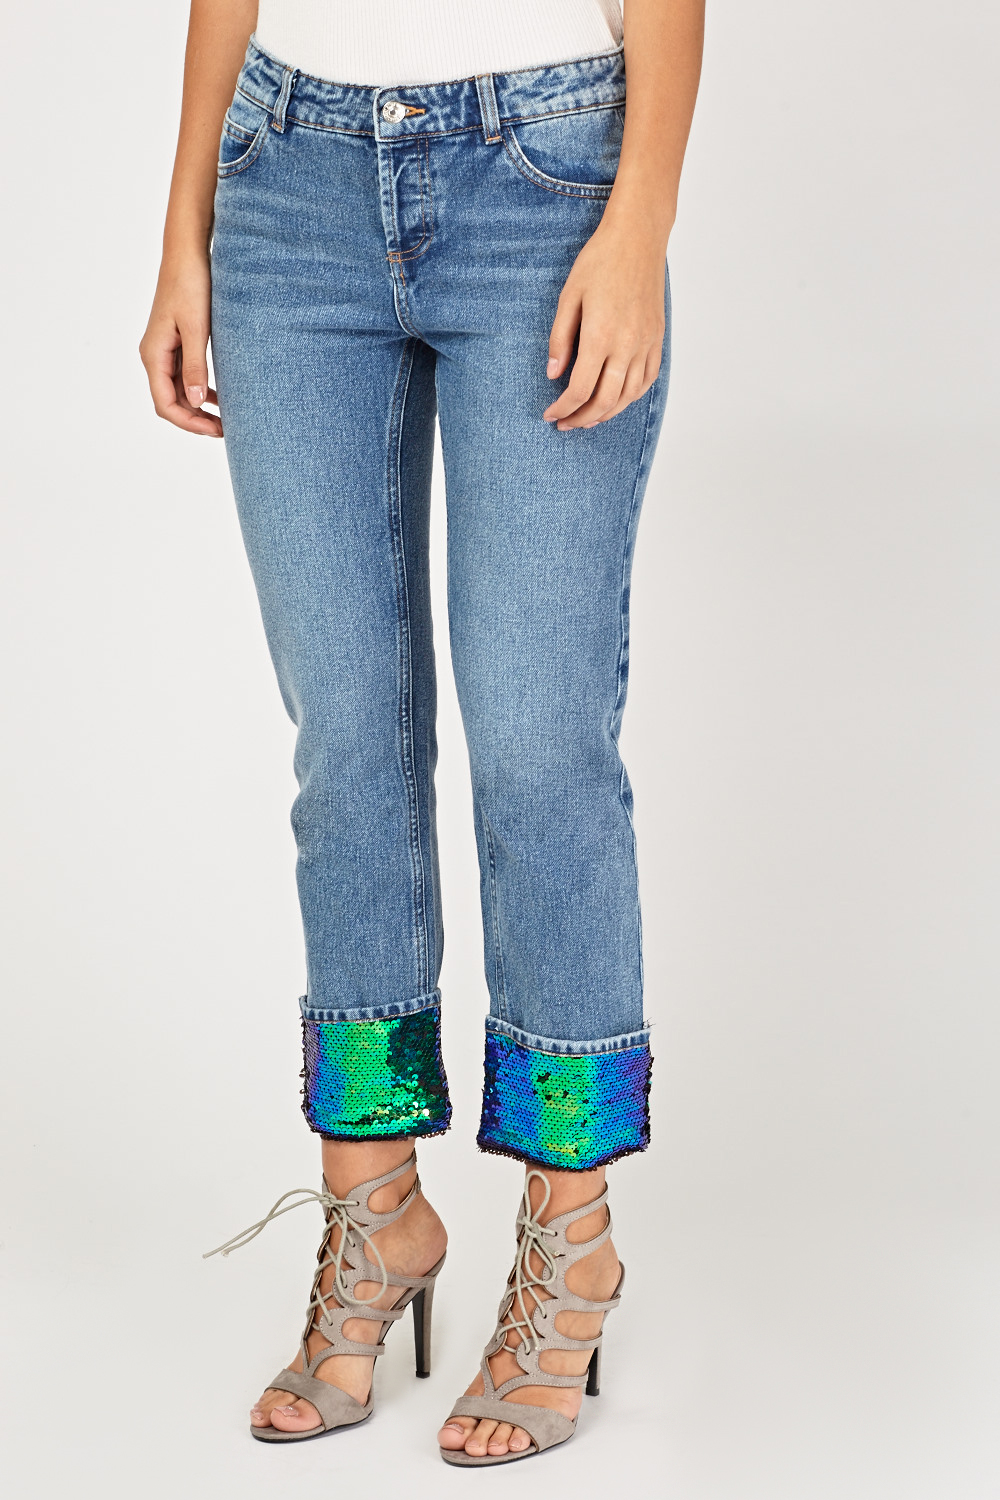 Sequined Rolled Hem Denim Jeans - Just $3